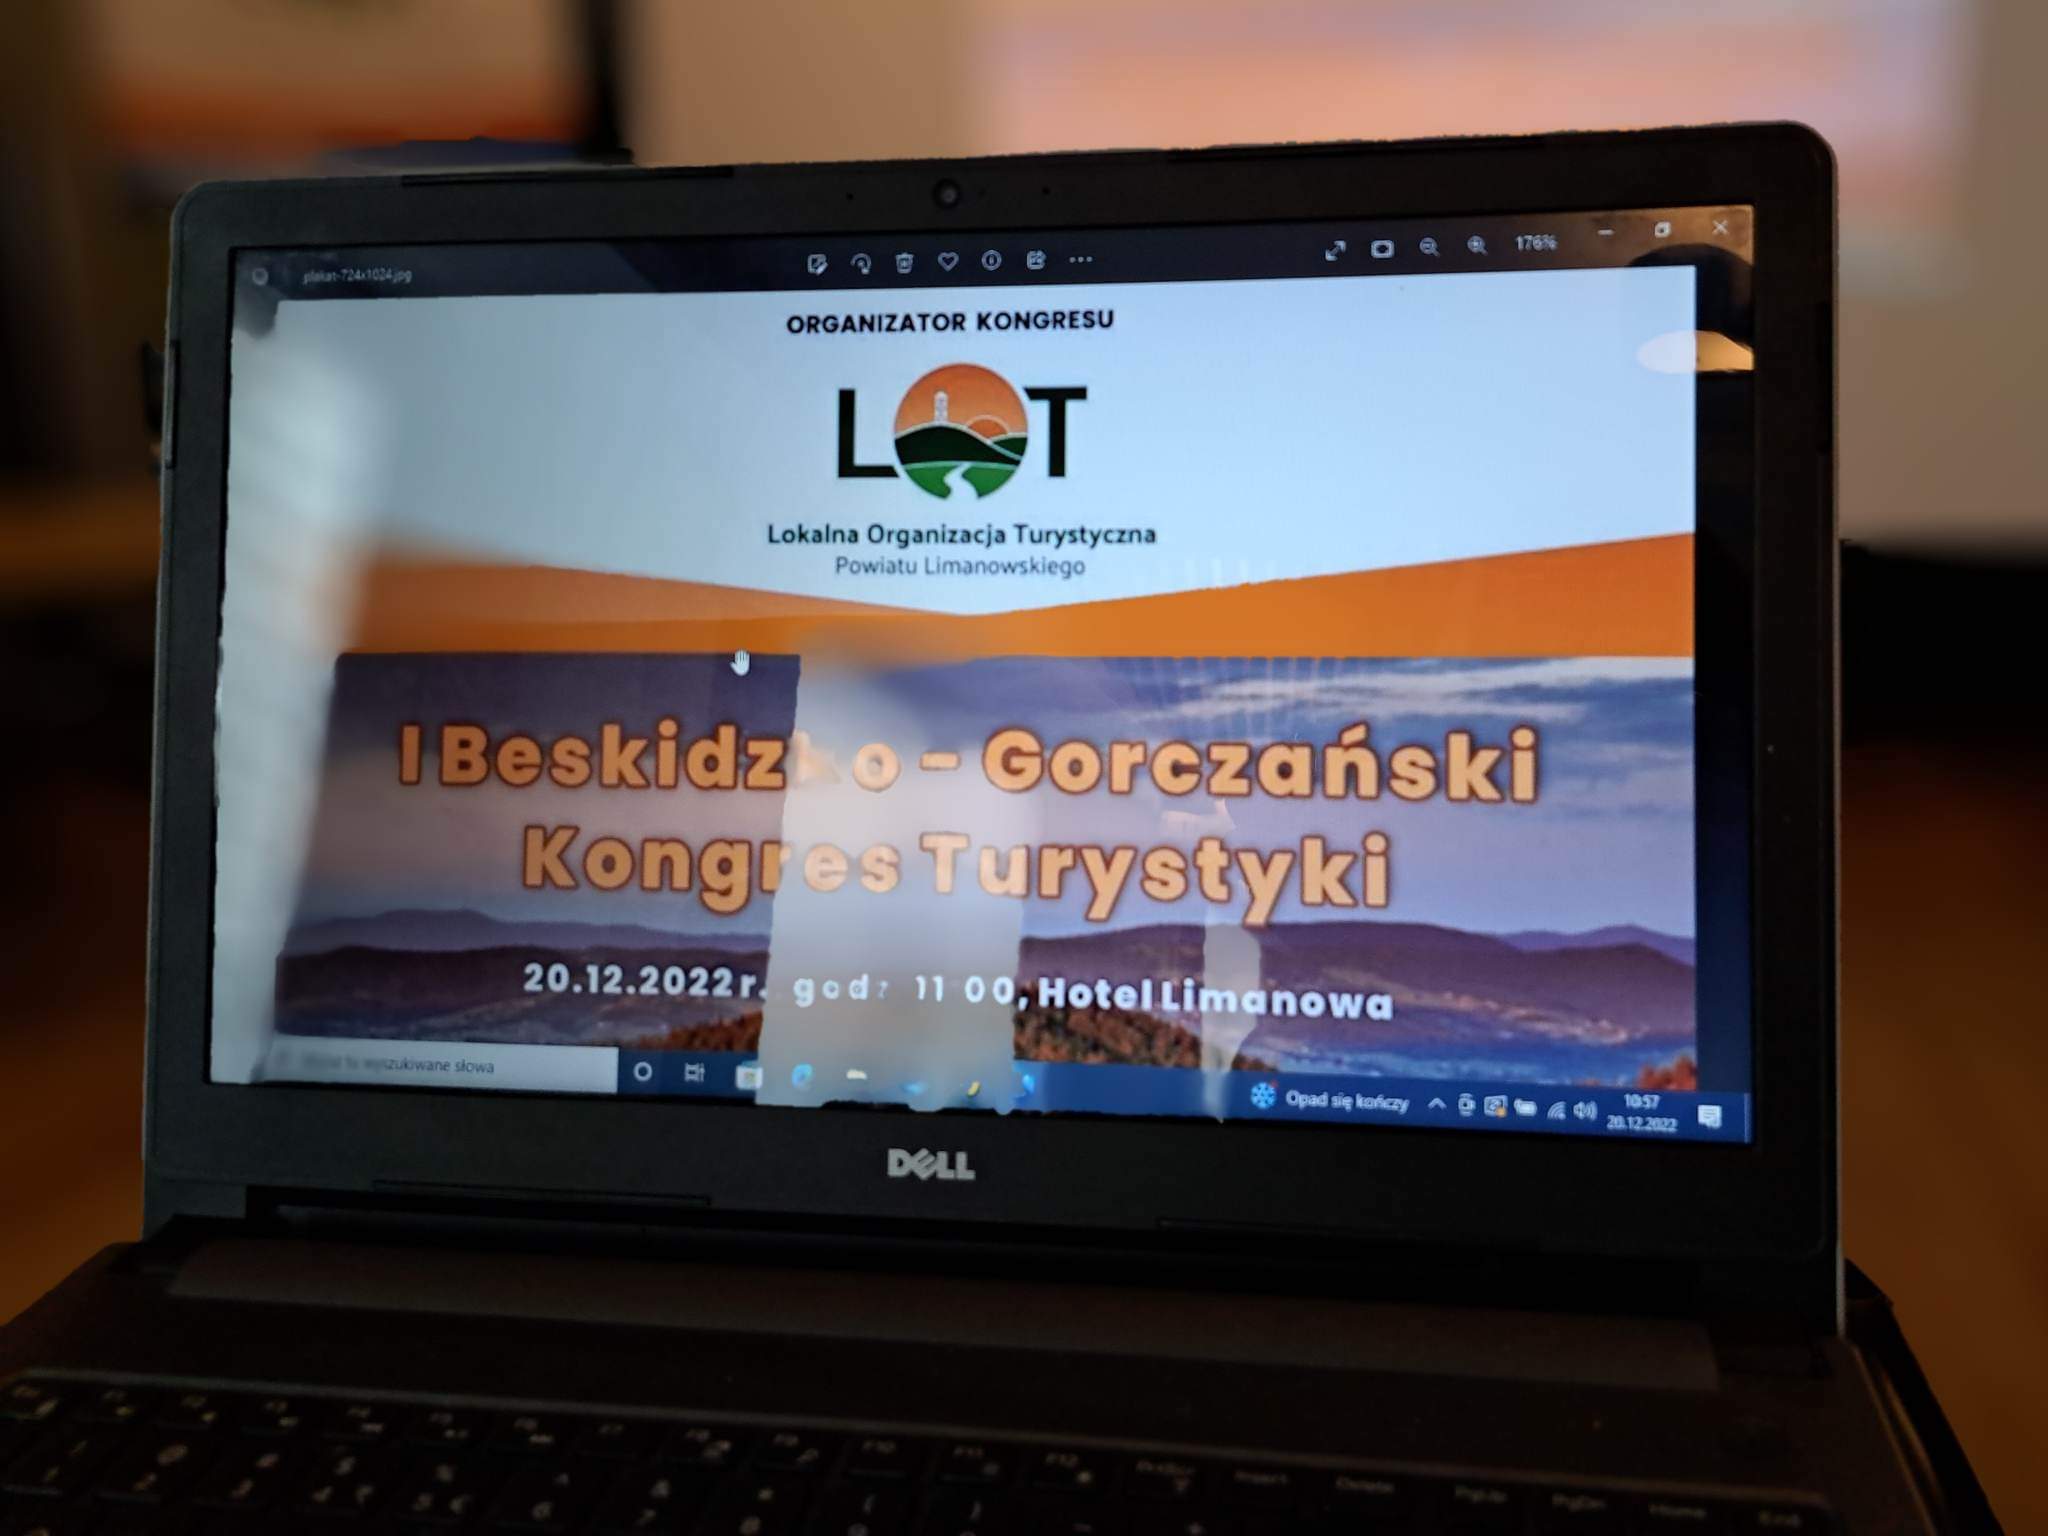 I Beskidzko-Gorczański Kongres Turystyki z udziałem Orkantour